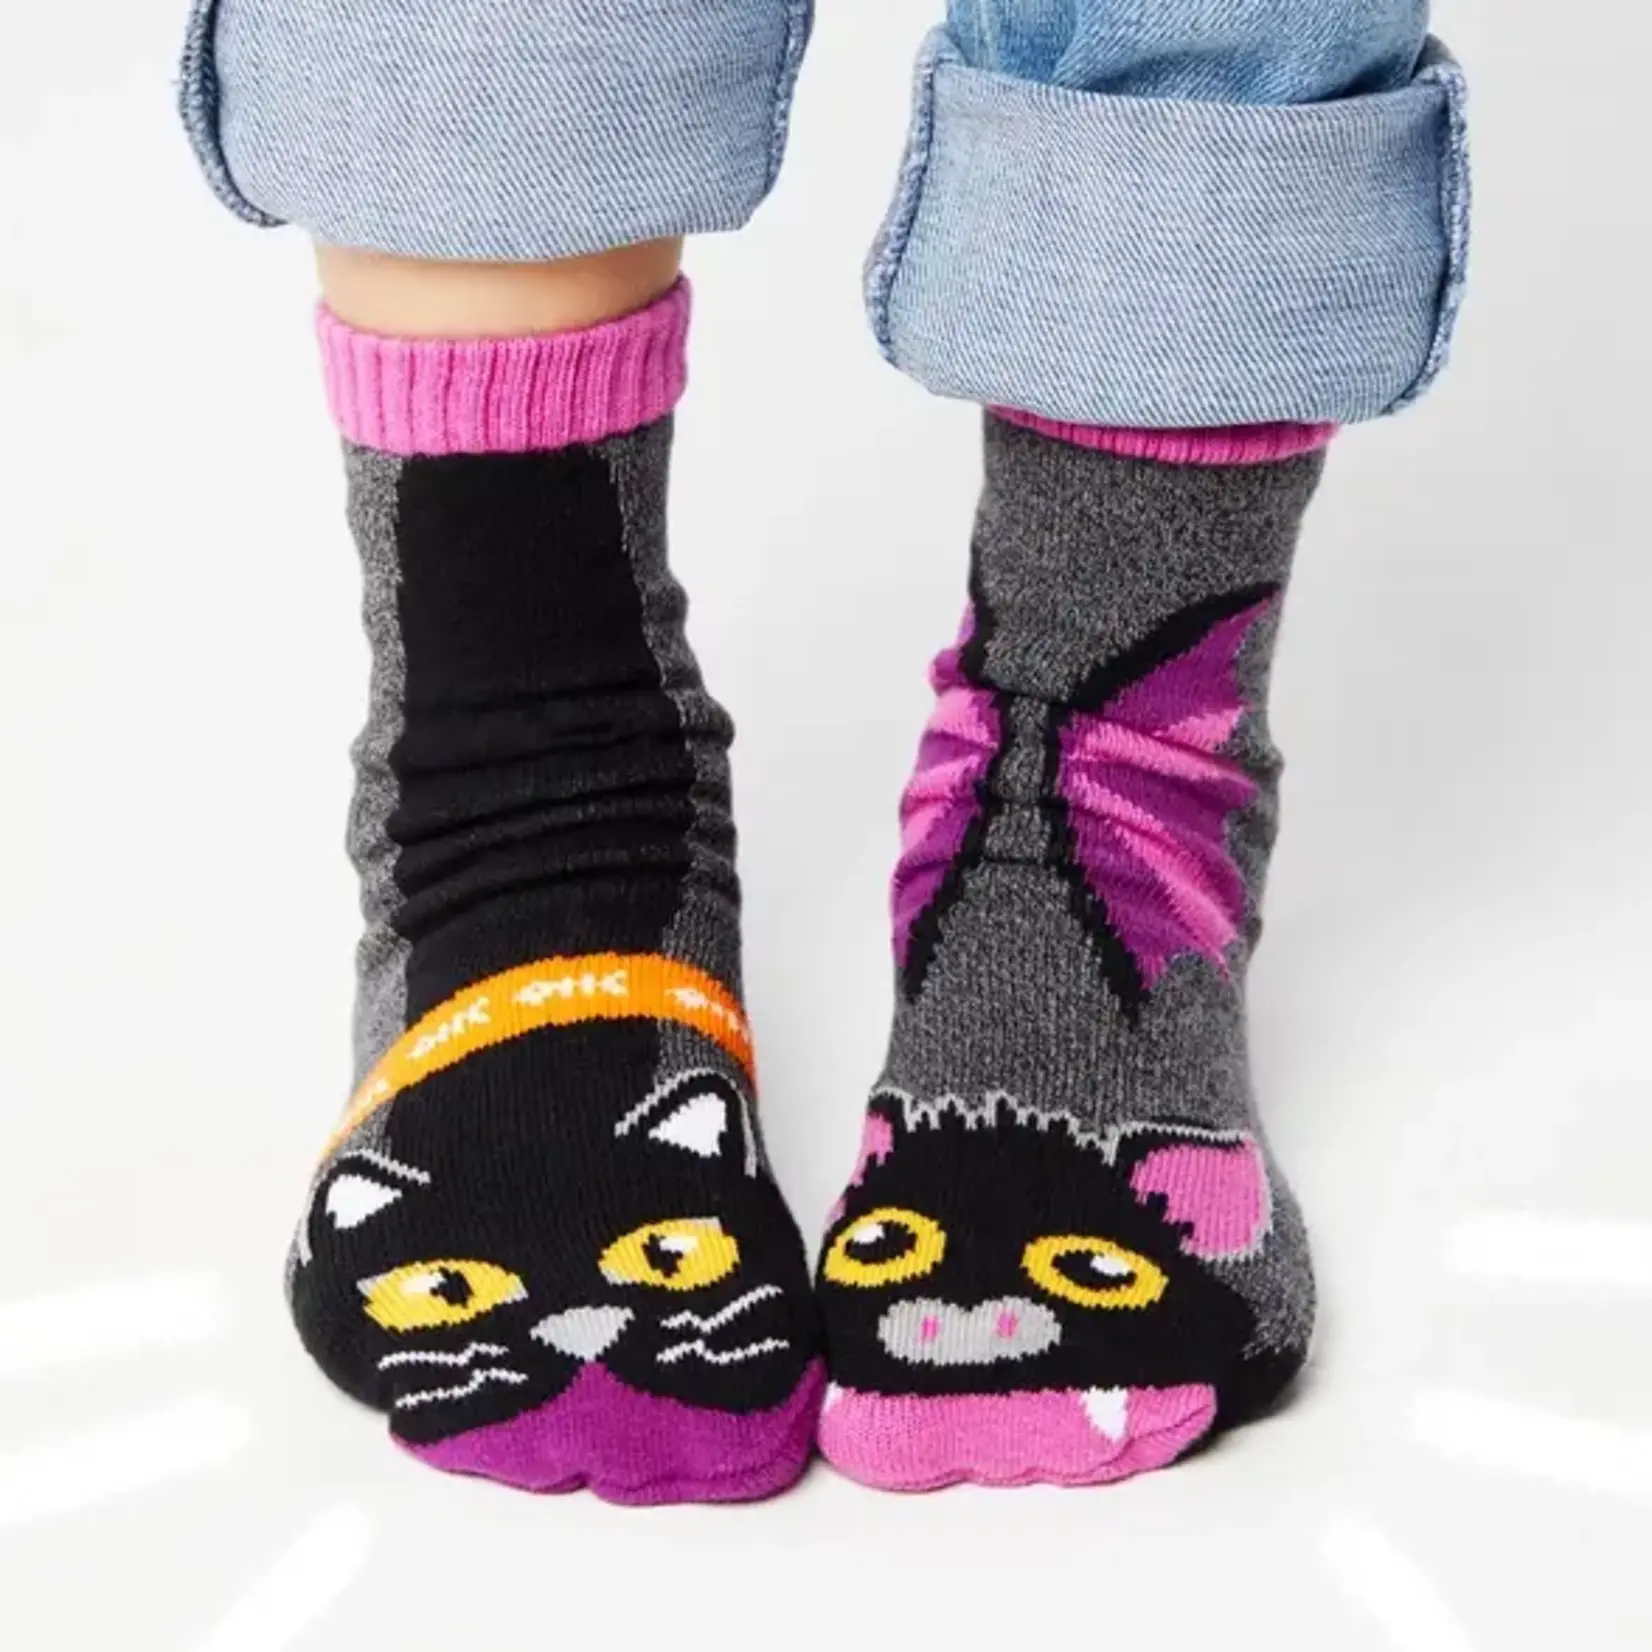 Pals Socks - Halloween Bat & Black Cat, Ages 4-8